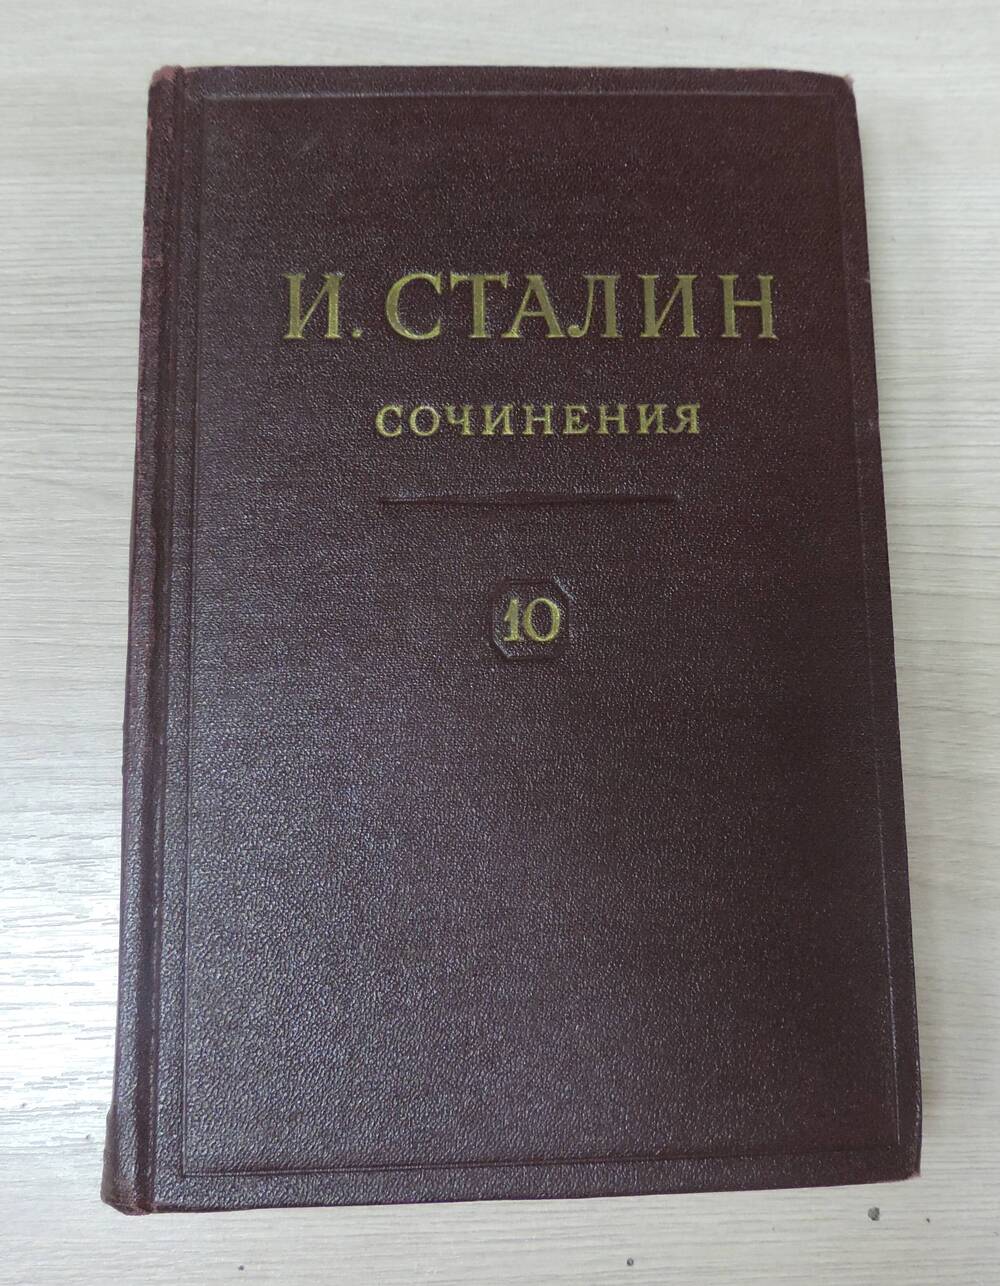 Книга И. Сталин. Сочинения Том 10.